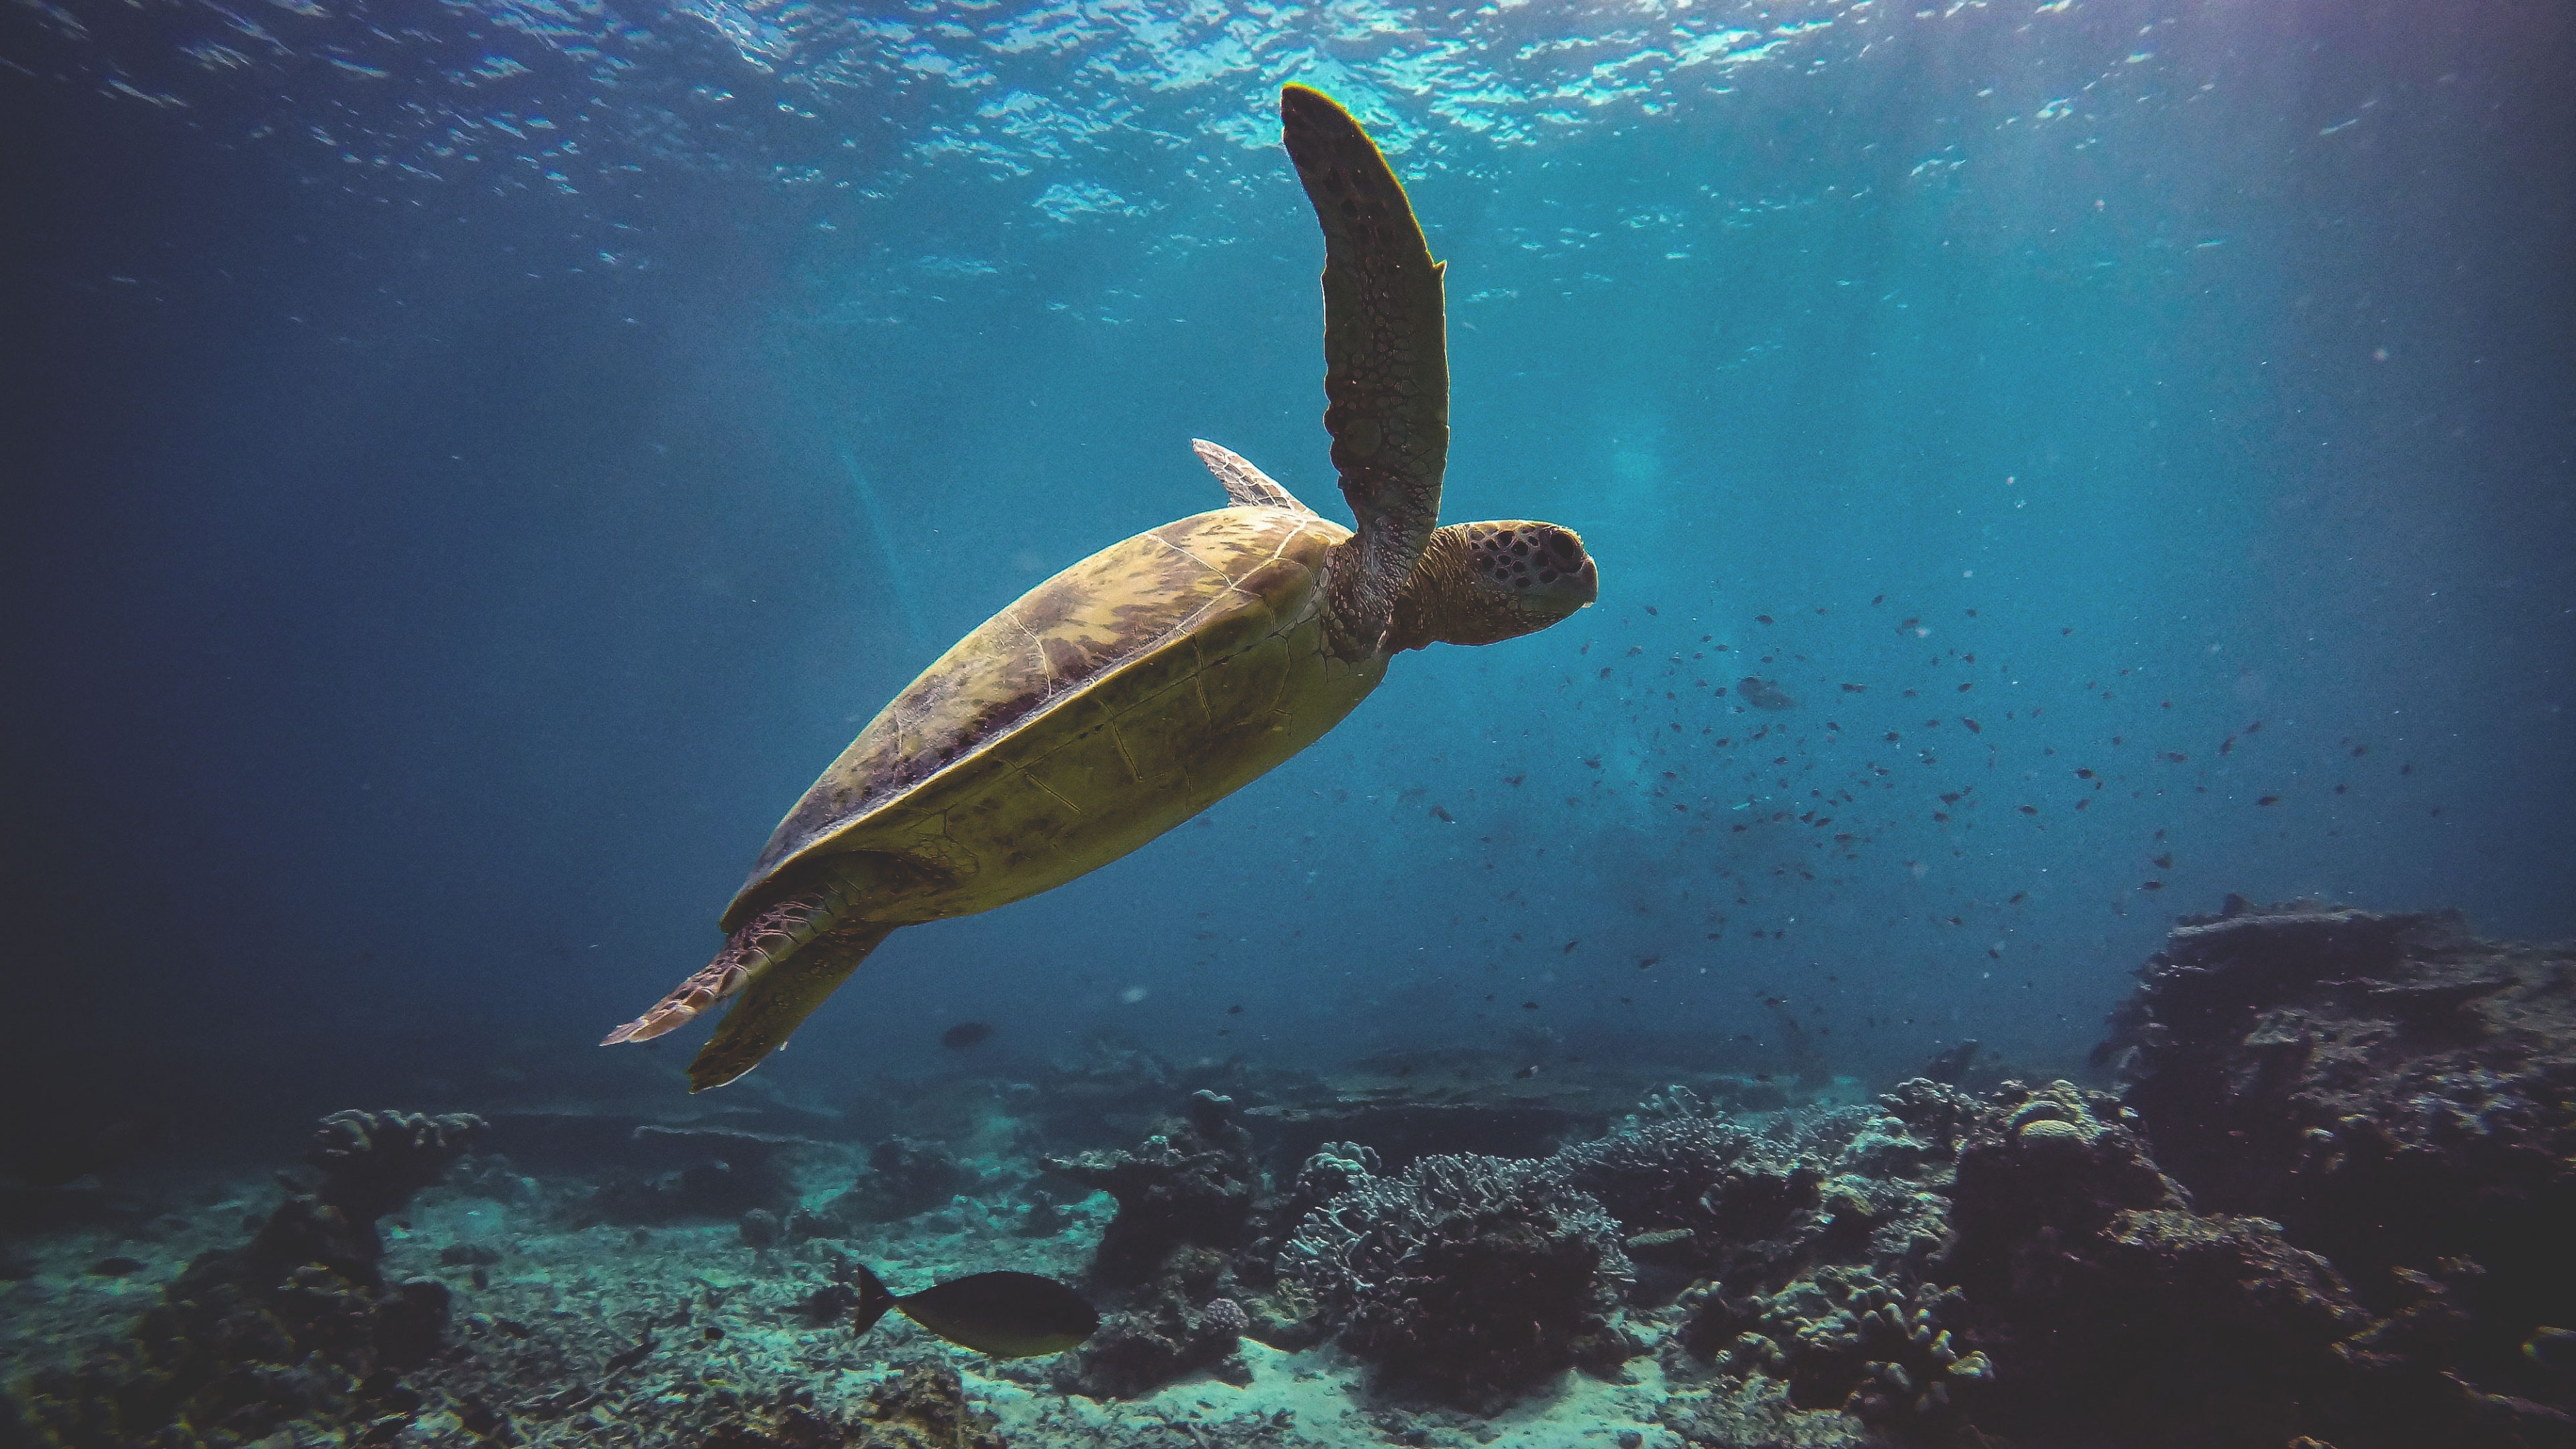 乌龟, S海龟, 水下, 海洋生物学 壁纸 3840x2160 允许